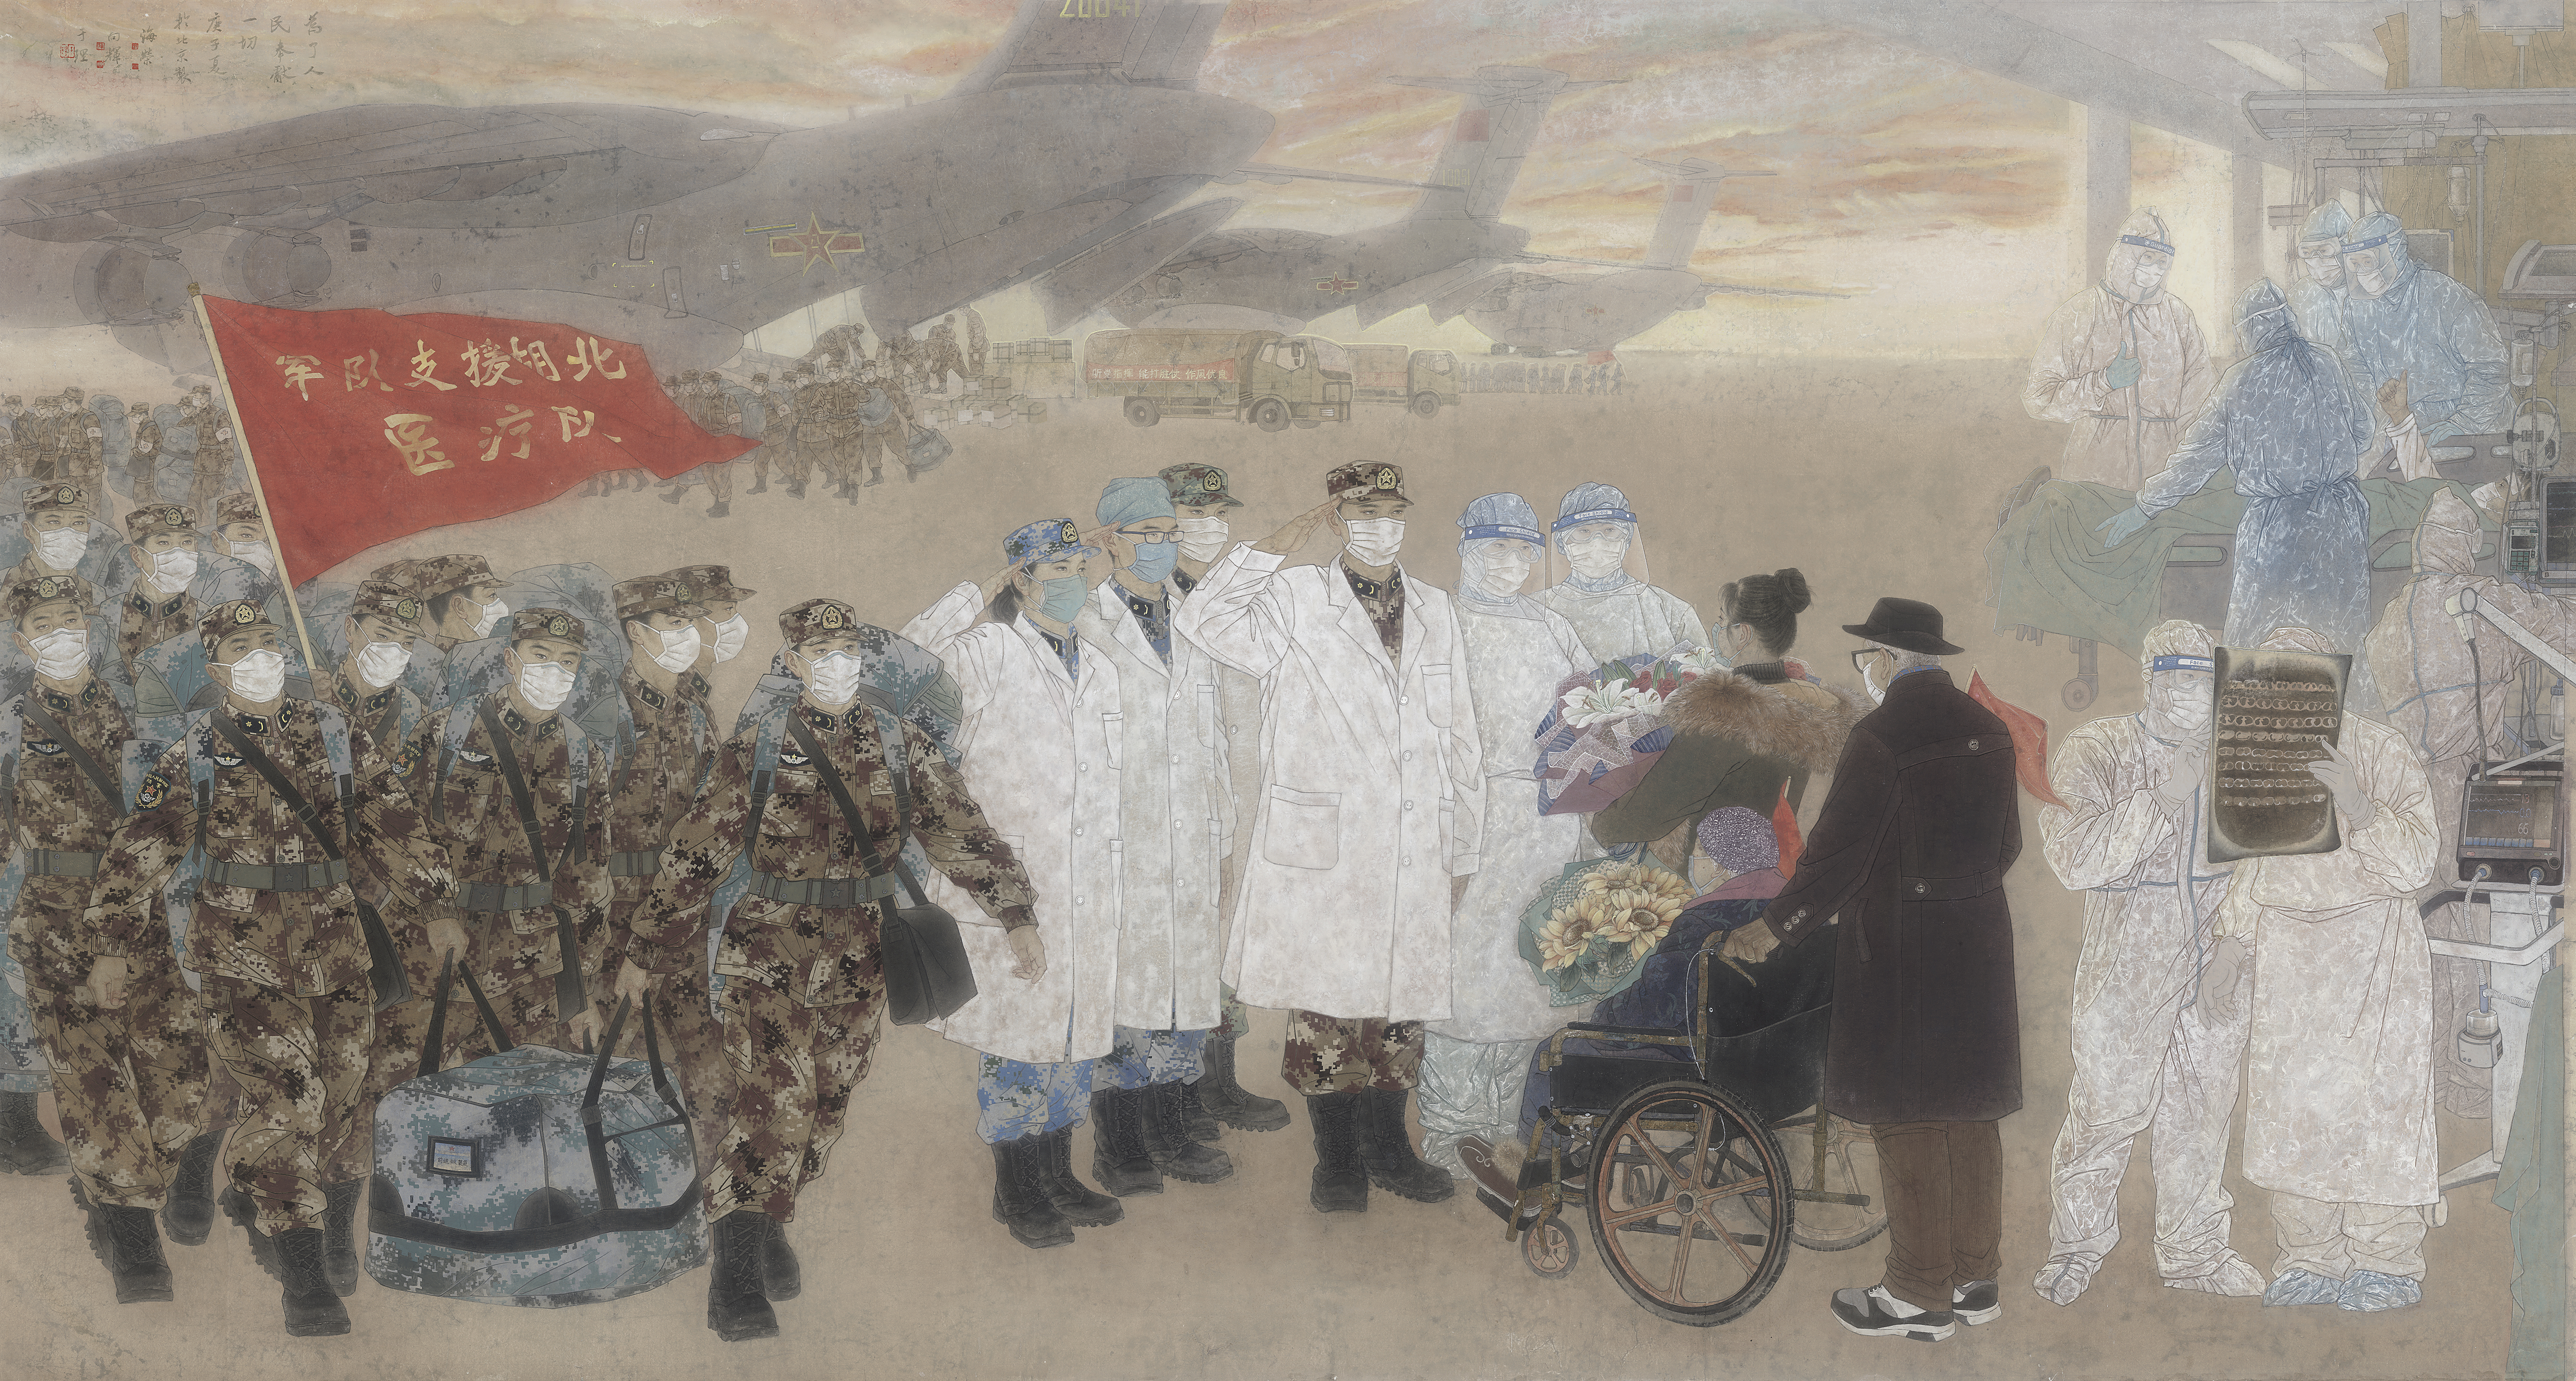 军队抗疫题材美术作品《为了人民》入藏军事博物馆